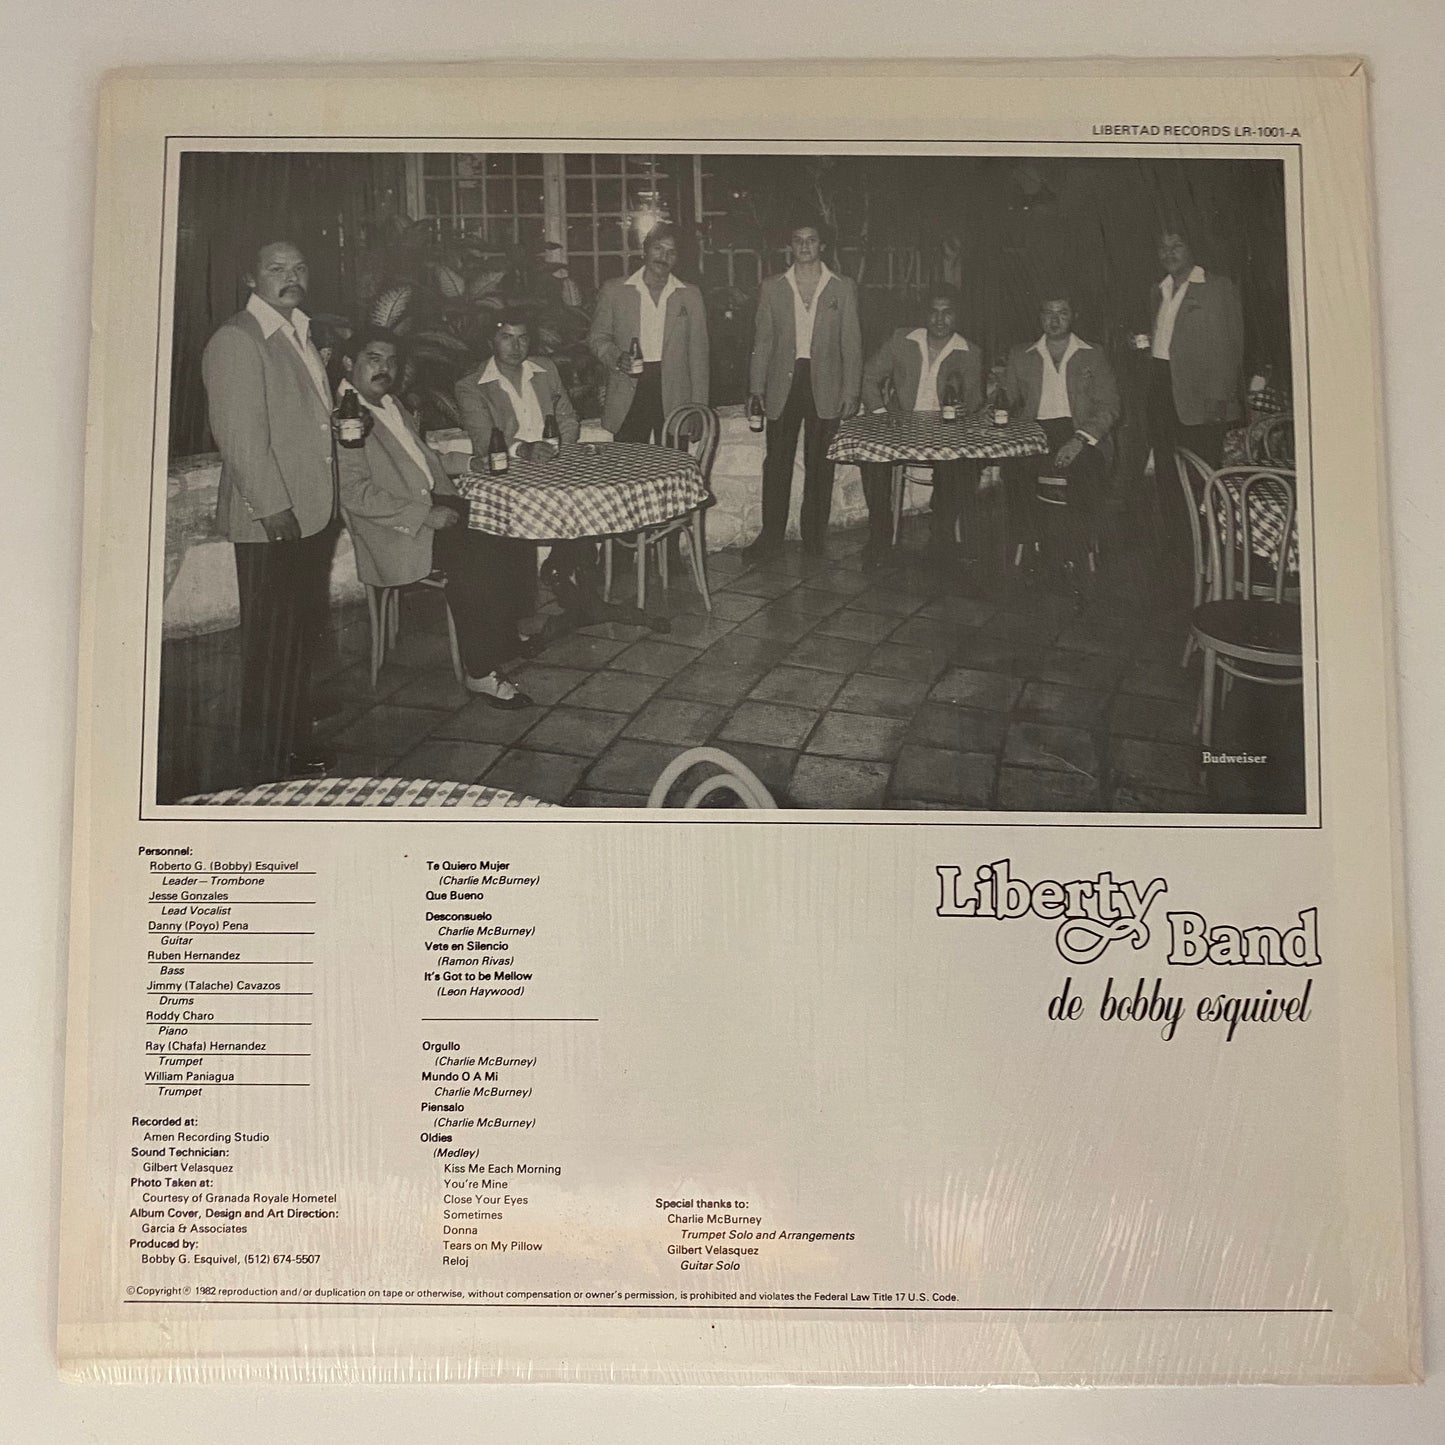 Liberty Band - En Nuestro Estillo (Open Vinyl)